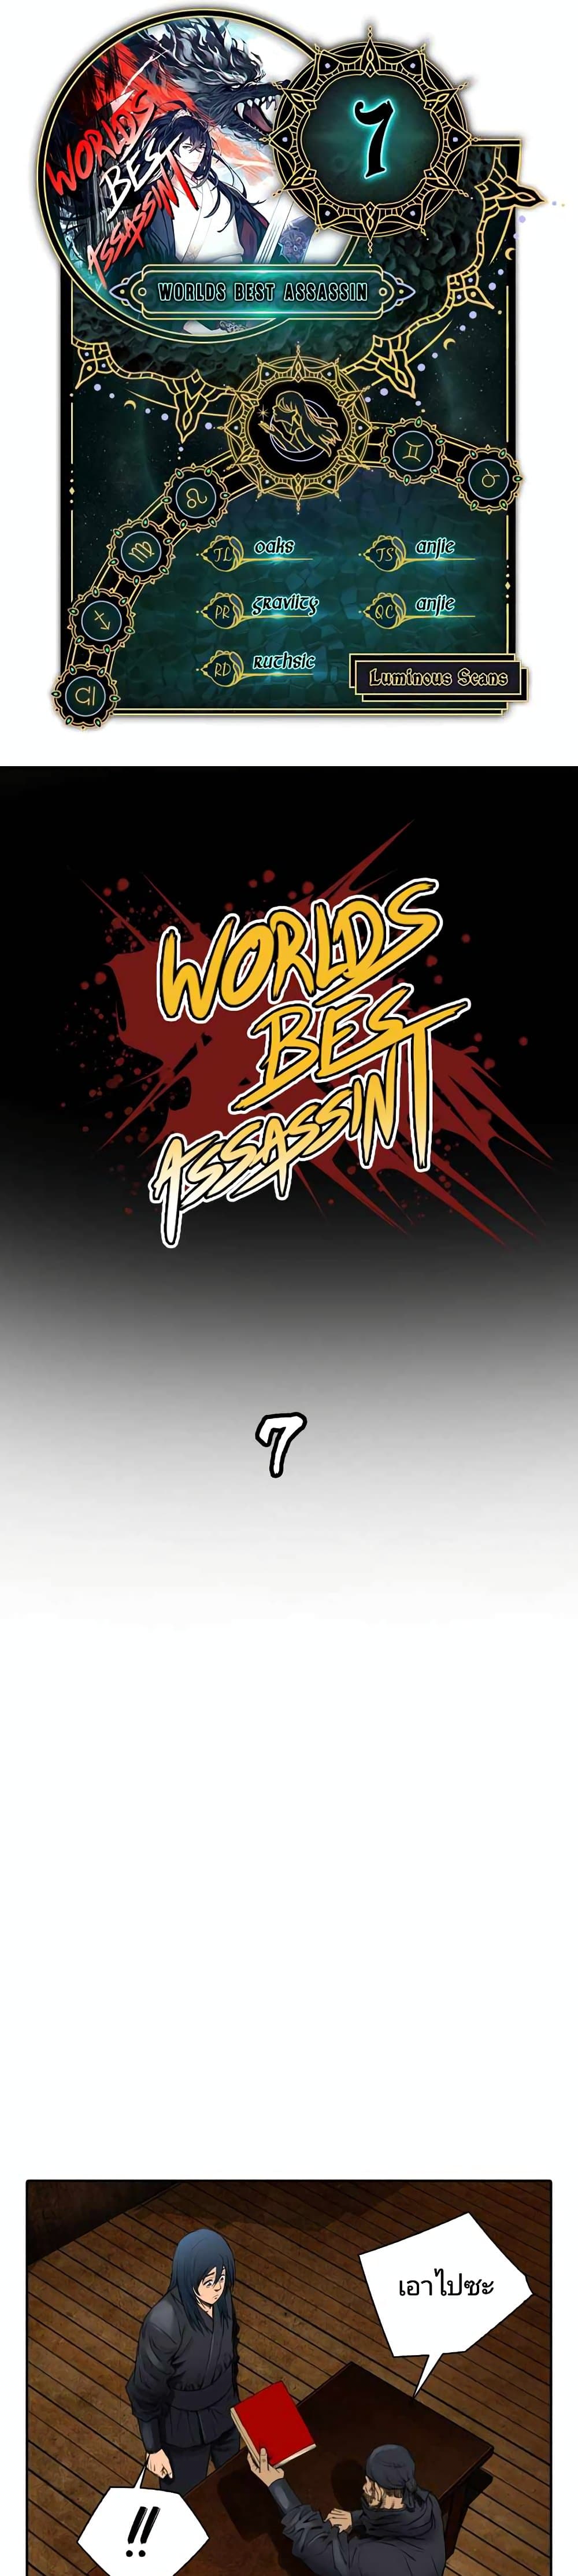 Worlds Best Assassin 7 02